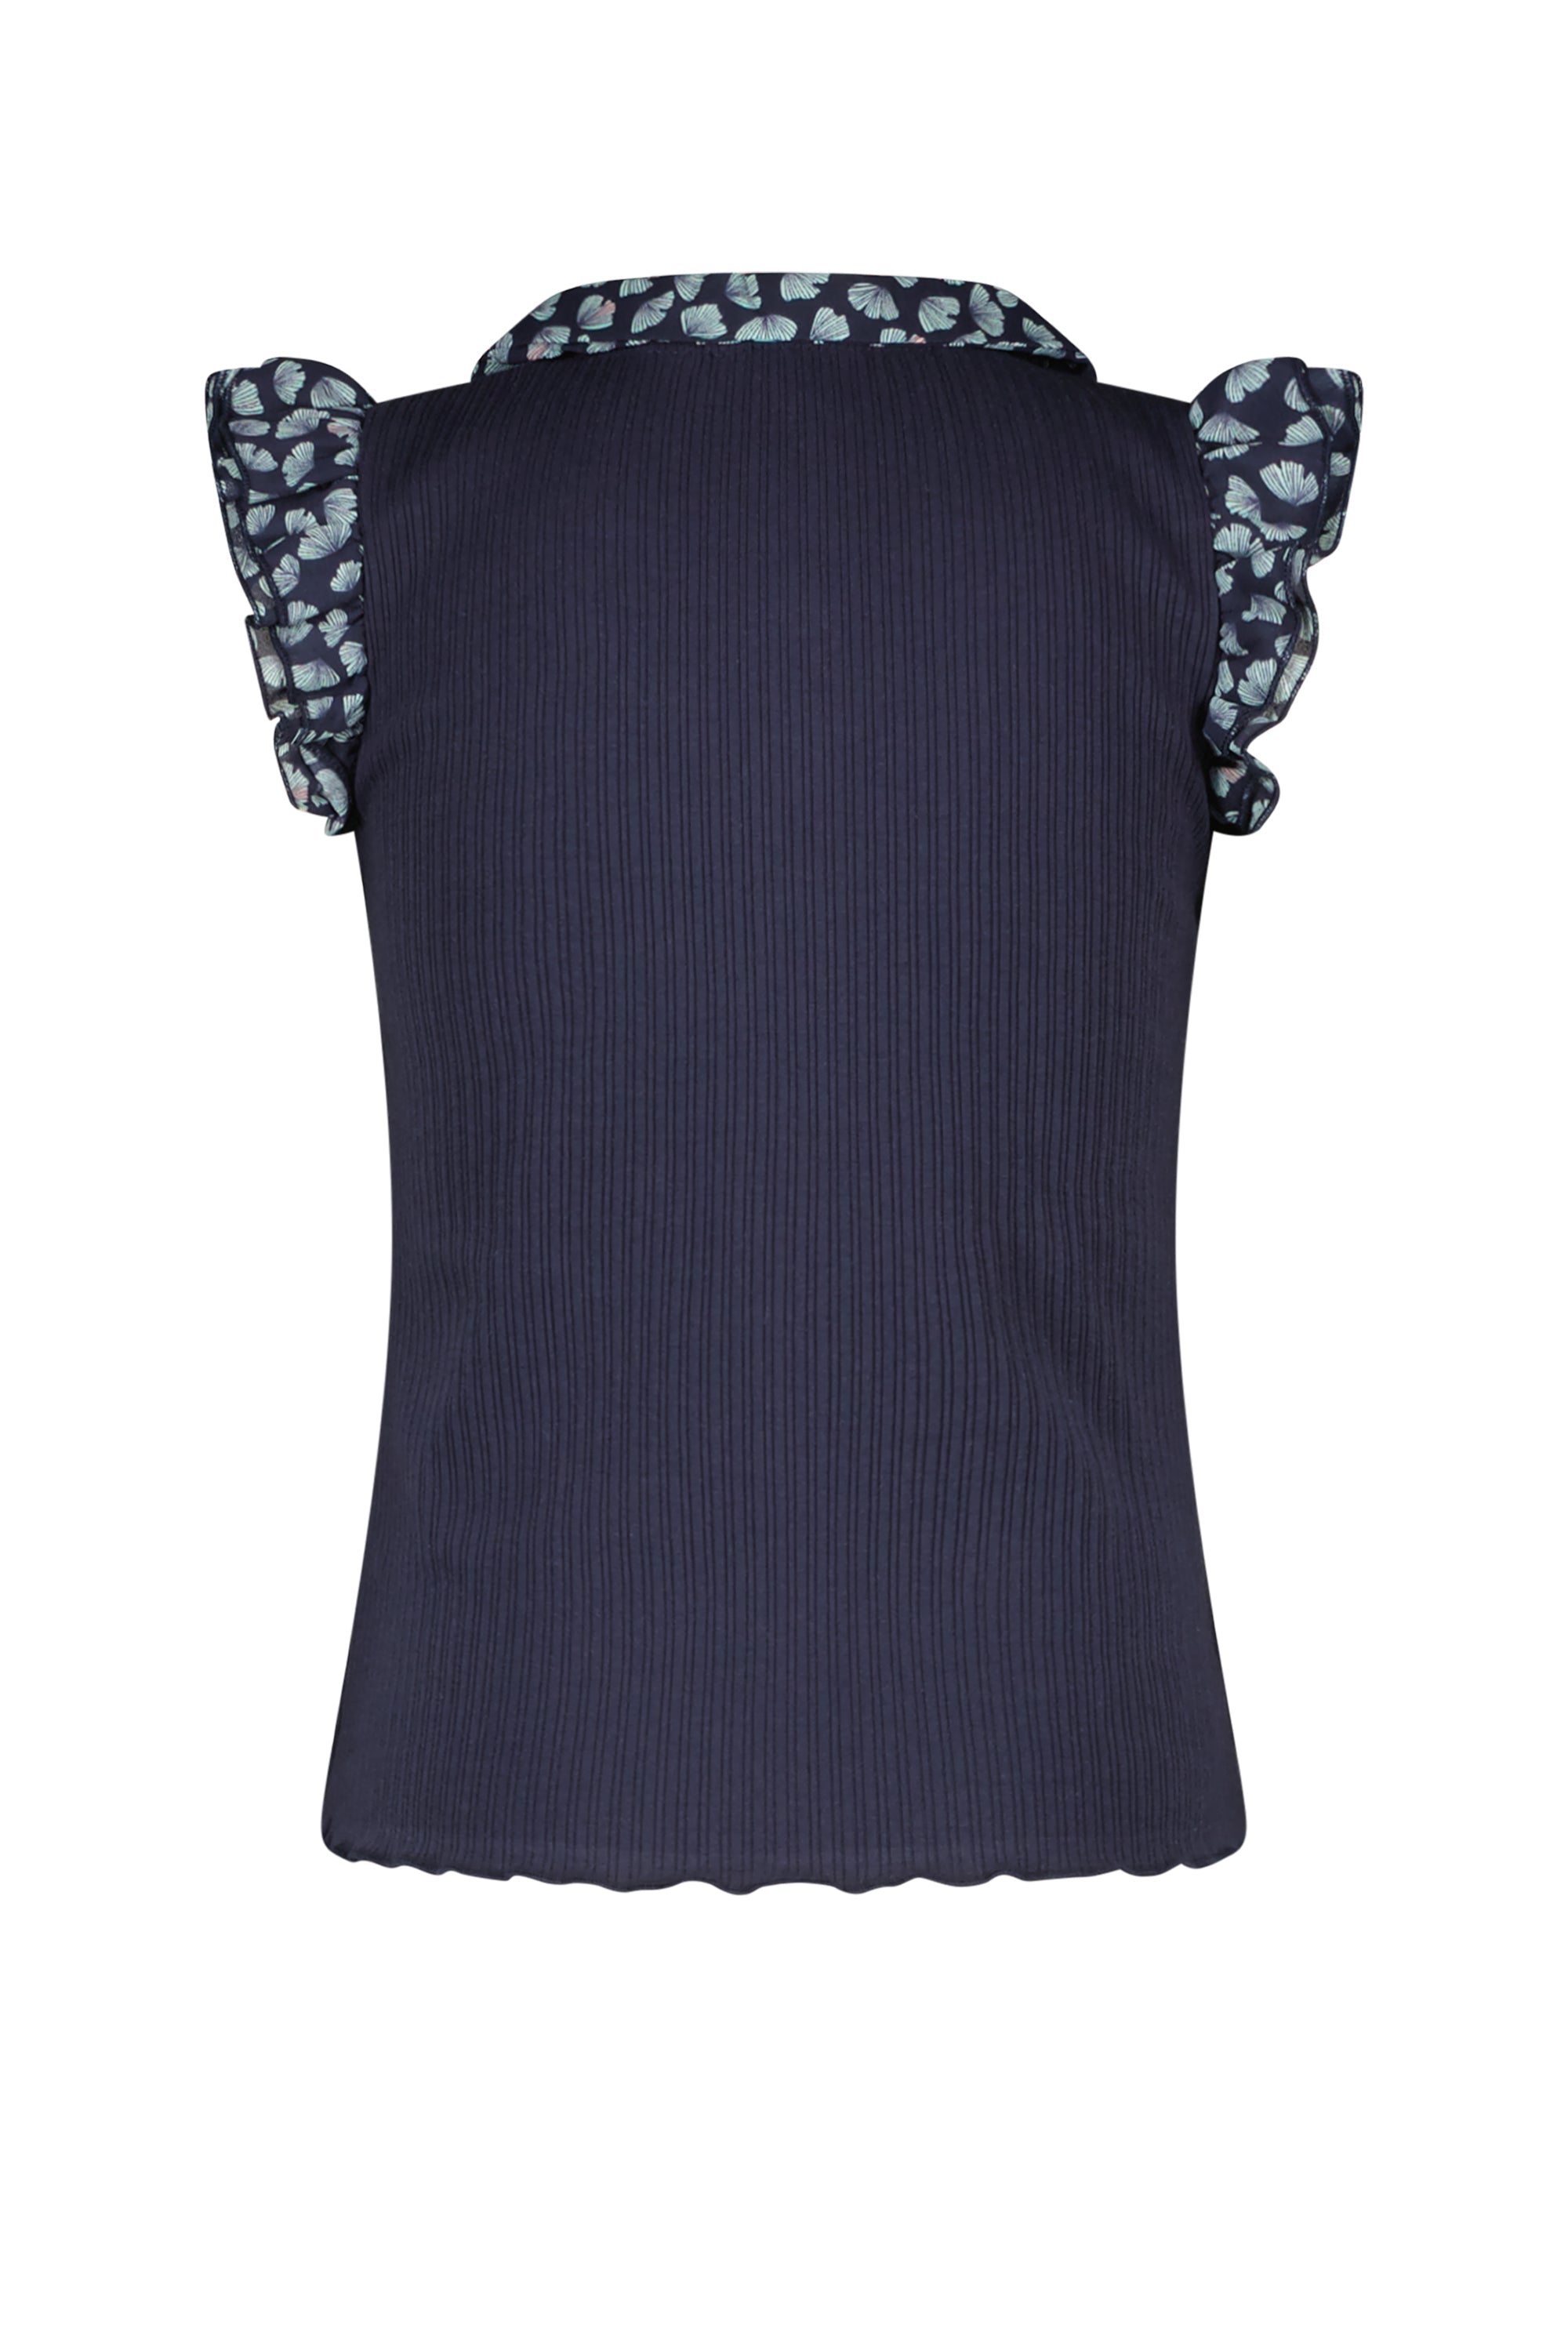 Meisjes Kami rib tshirt with contrast woven collar and capsleeves van NoNo in de kleur Navy Blazer in maat 134-140.